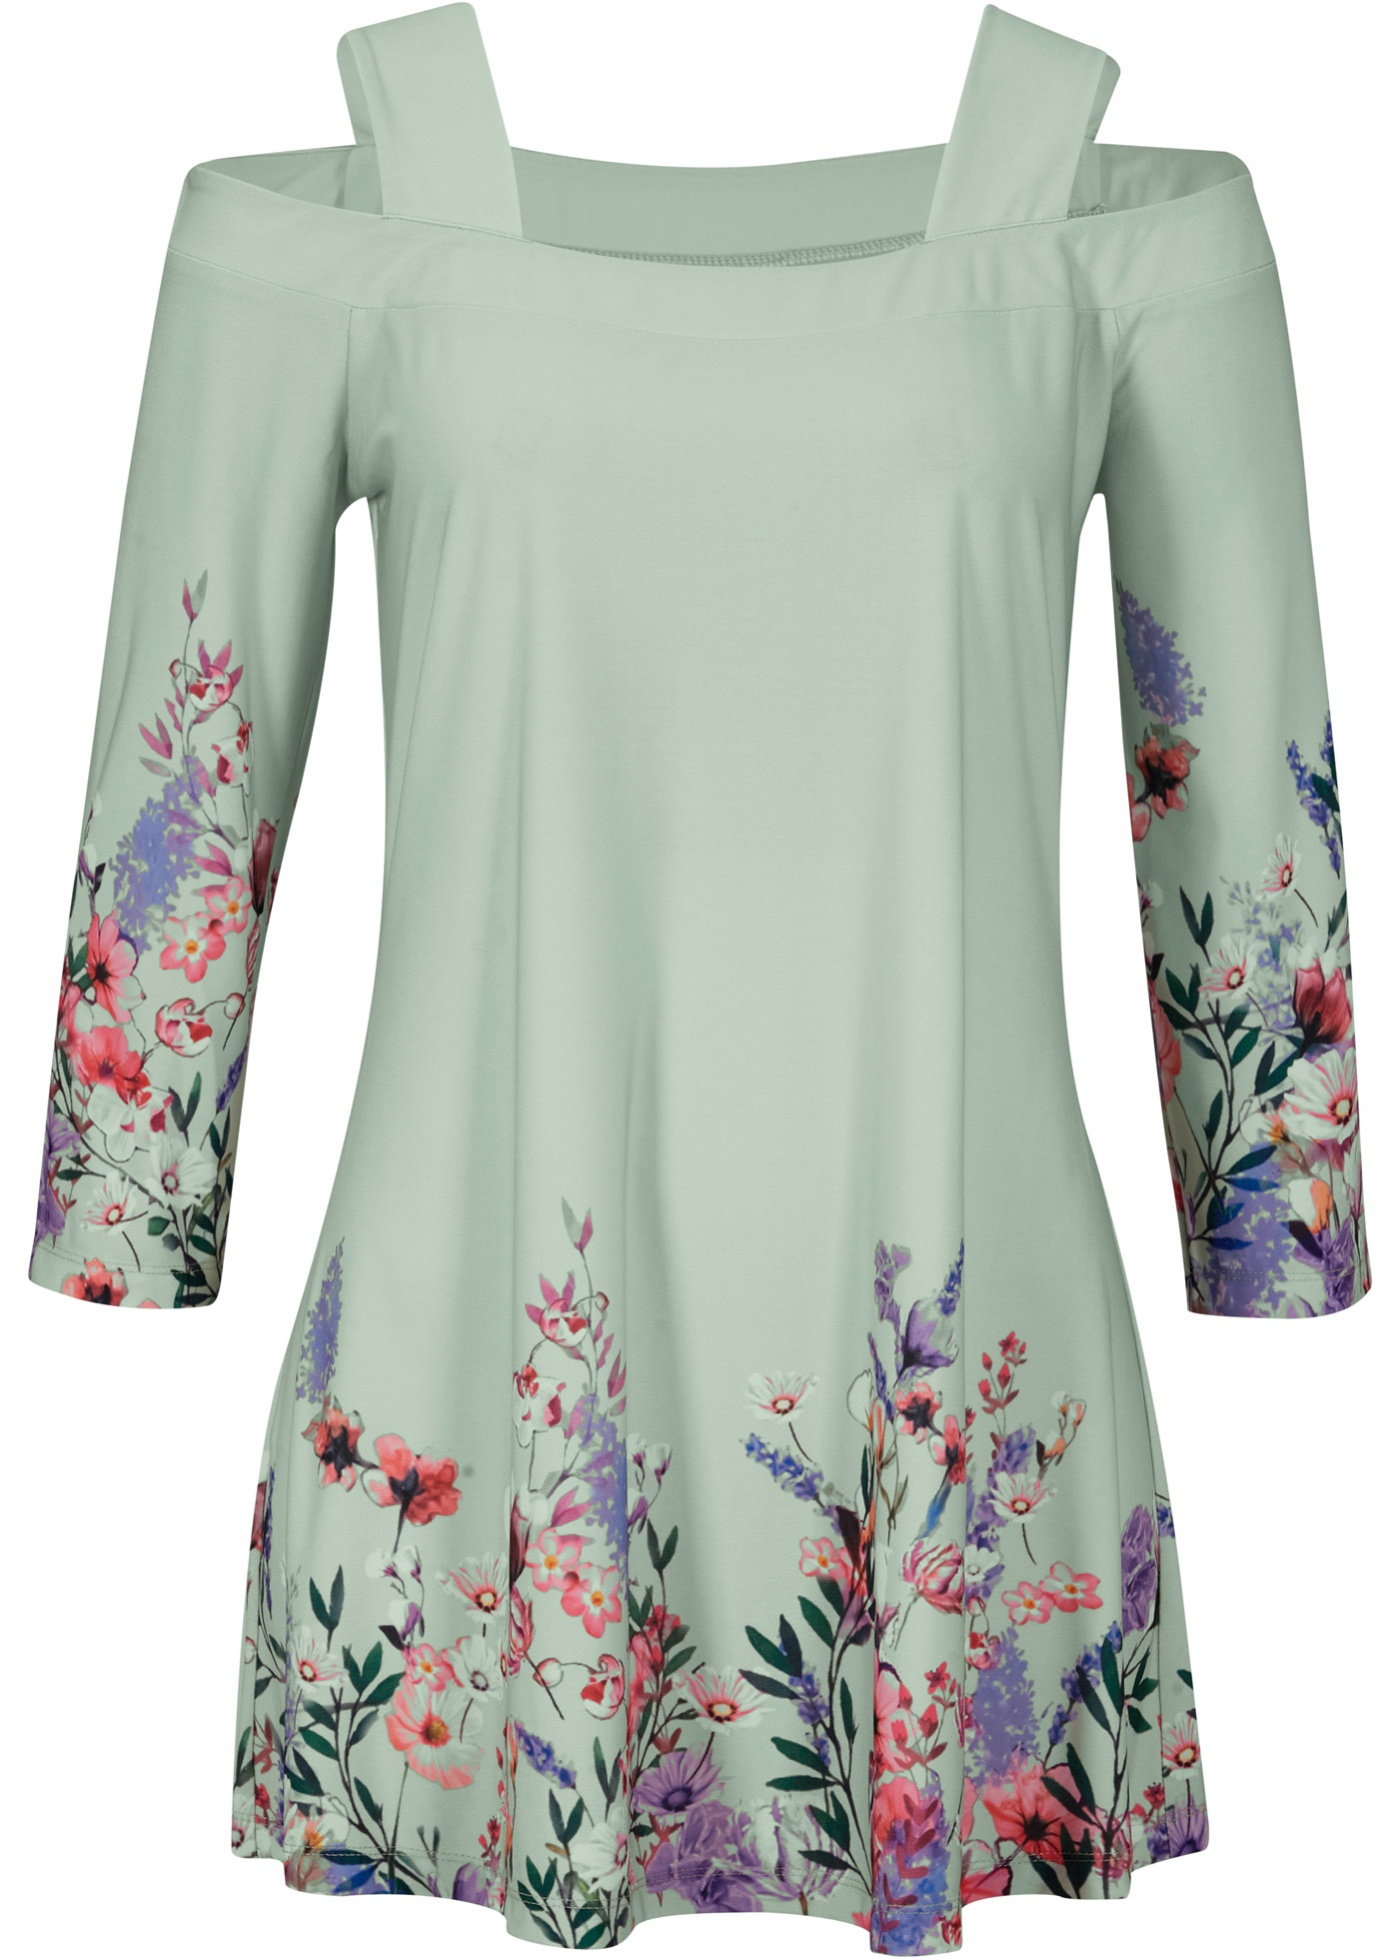 Verspieltes Cold-Shoulder-Shirt mit Blumenmuster von bpc selection premium (94874195) in softsalbei geblümt